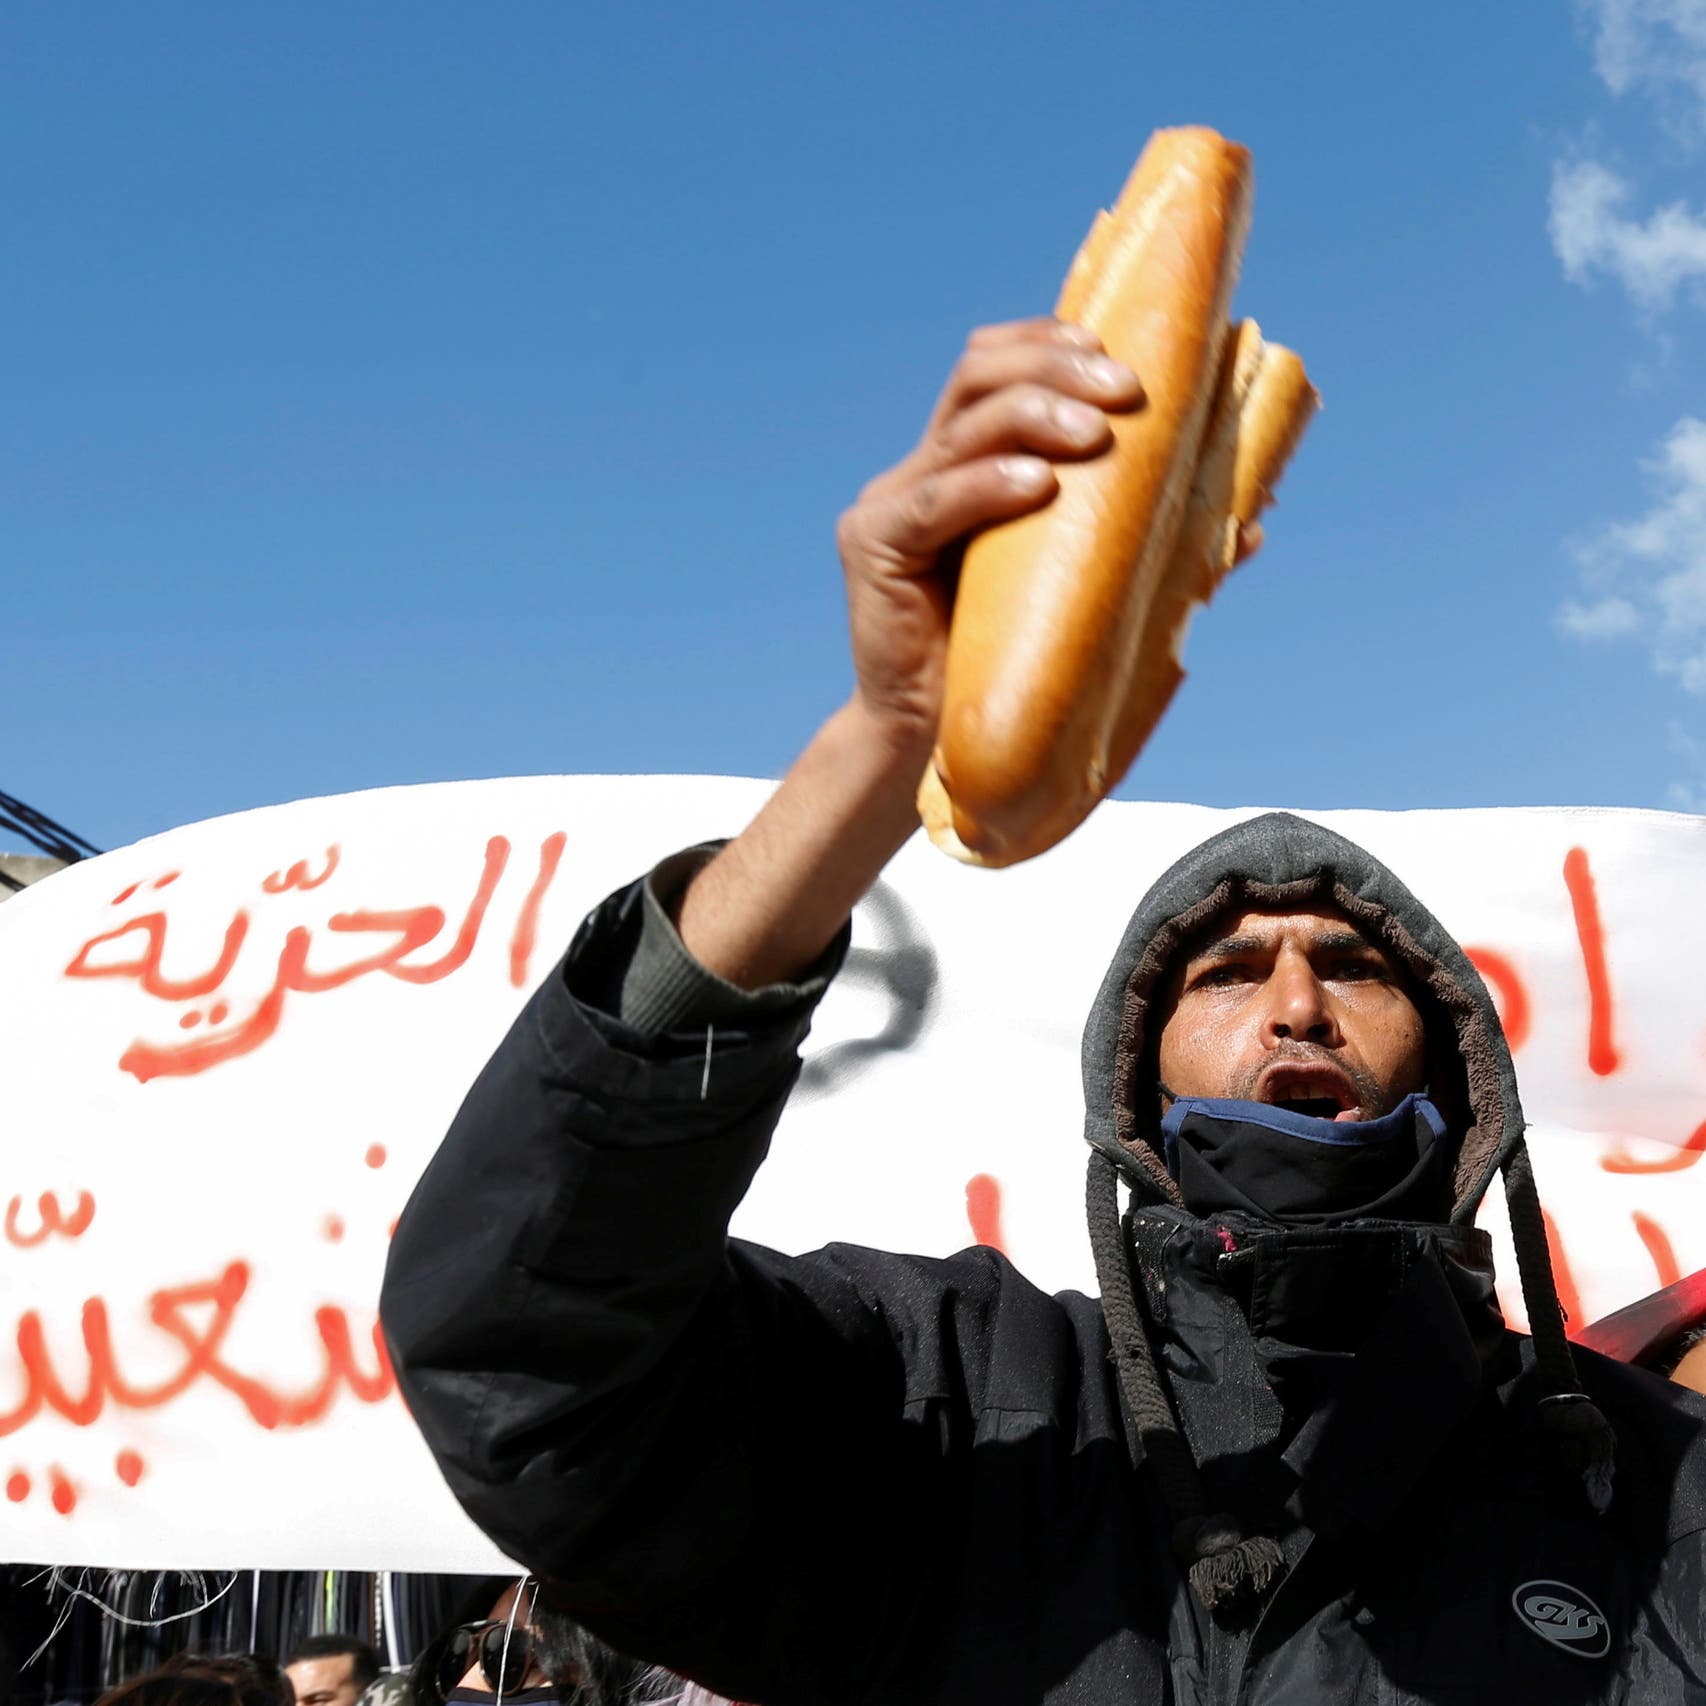 وضع خطير بتونس.. سعيد "لو كان النظام رئاسياً لحلت الأزمة"